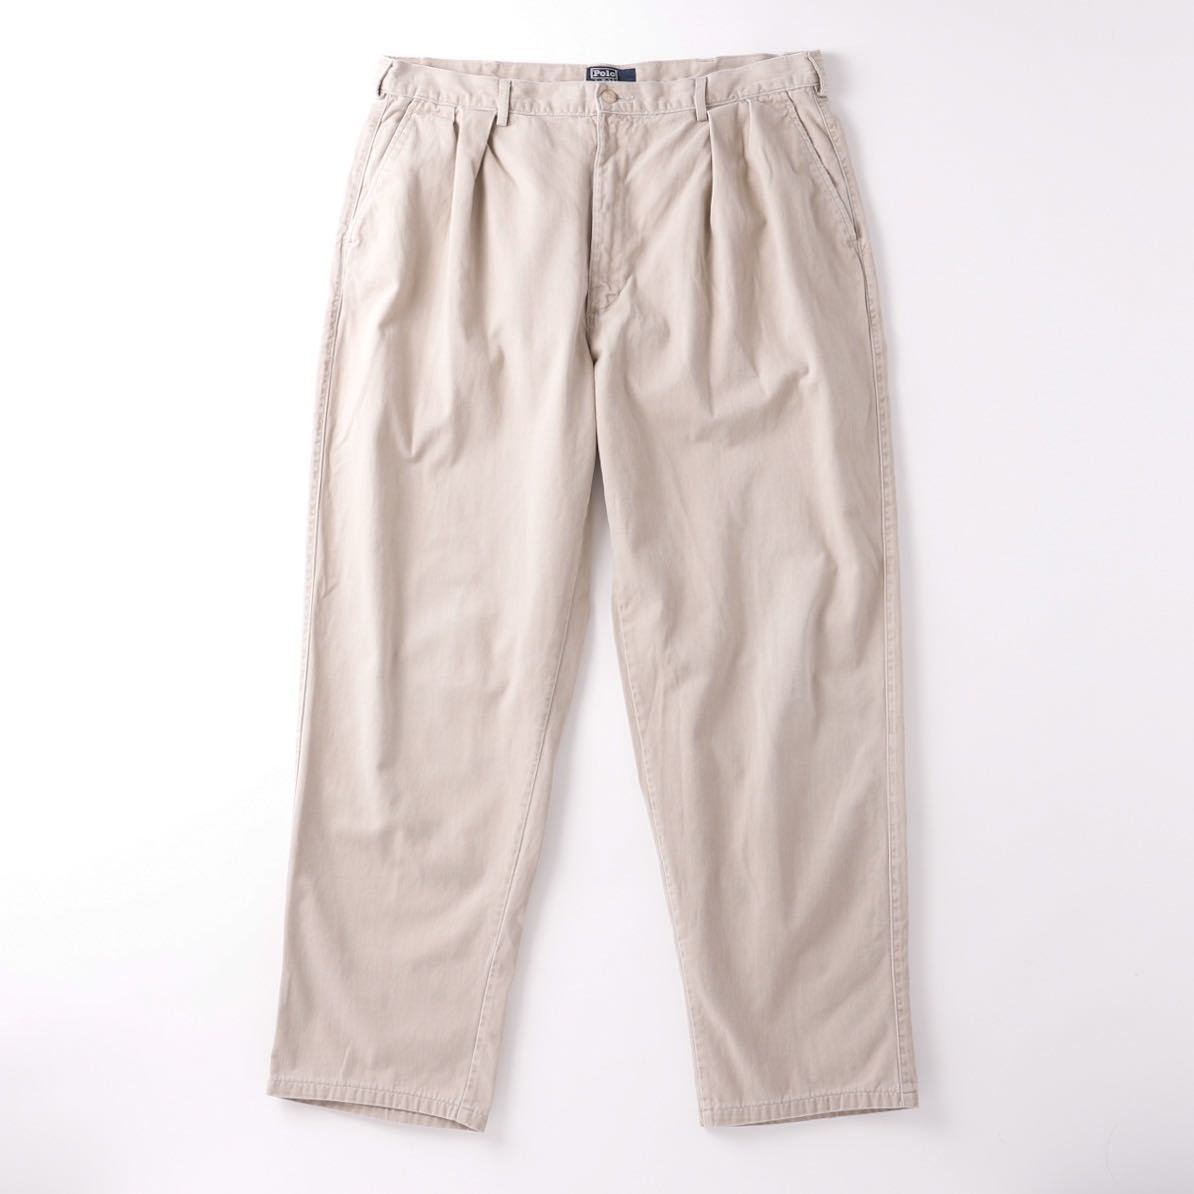 【極美品】80s Ralph Lauren vintage tuck slacks chino pants ヴィンテージ ラルフローレン 2タック スラックス チノ パンツW36 USA製